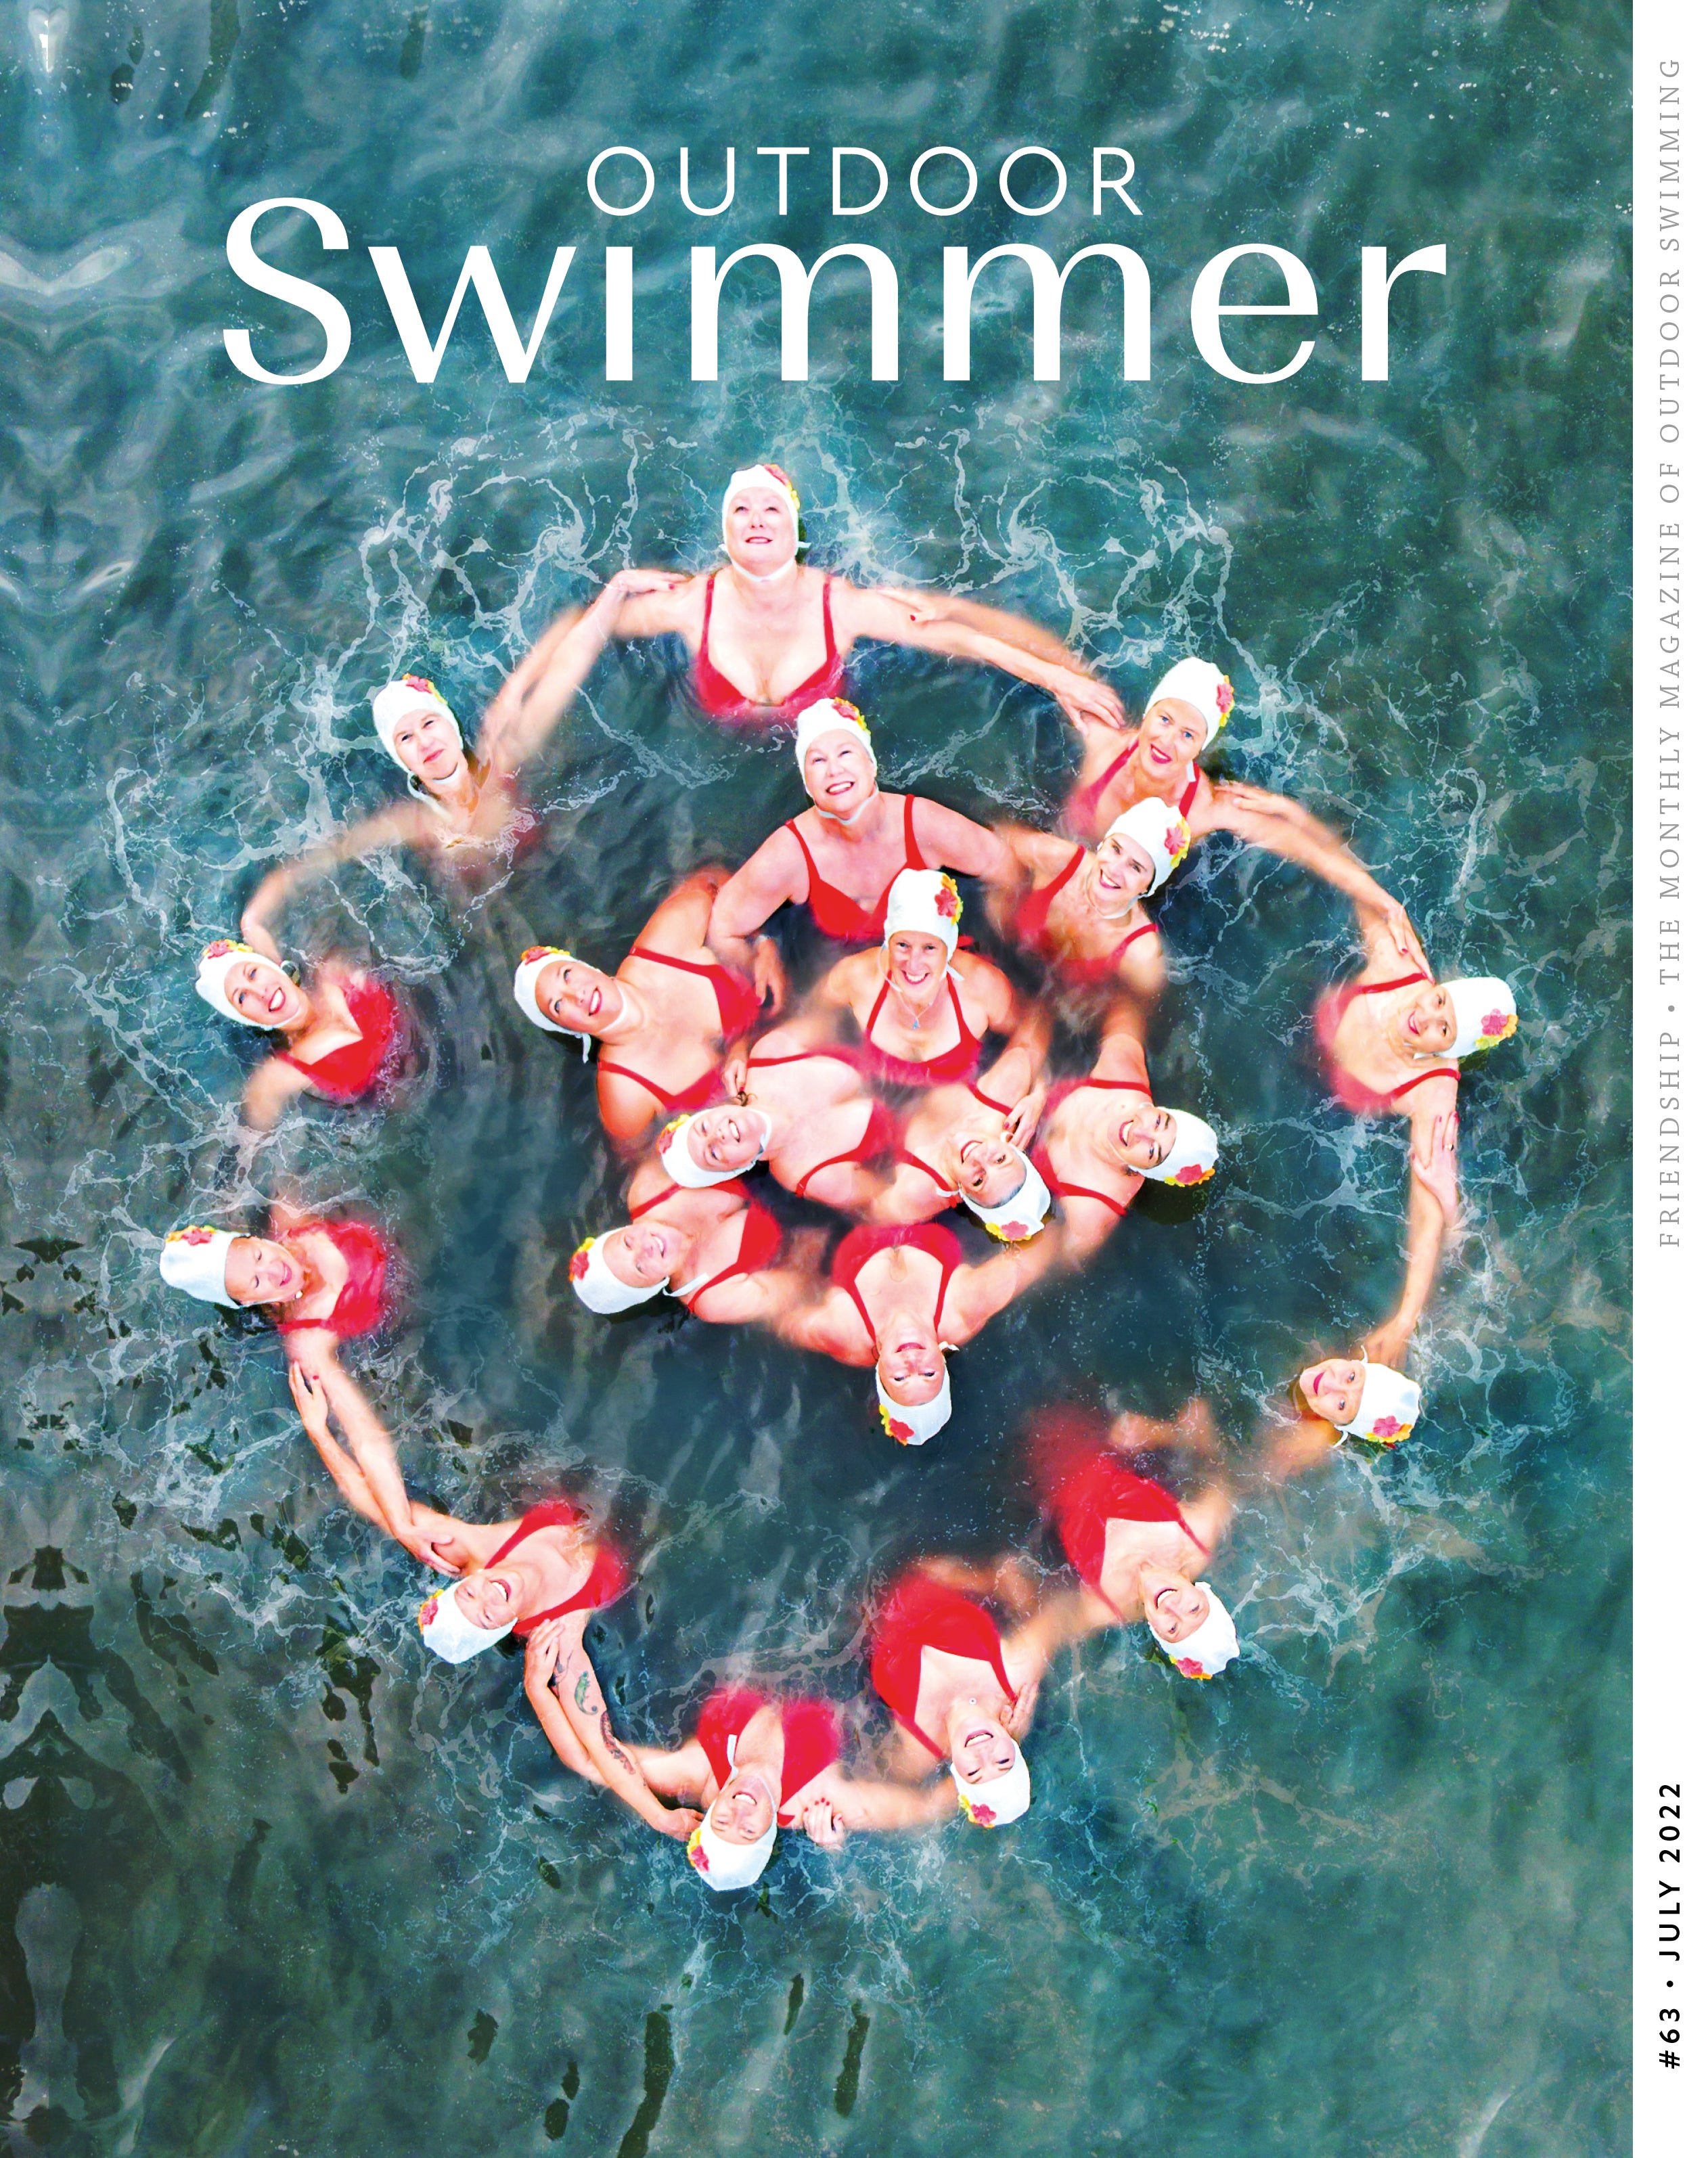 Outdoor Swimmer Magazine - Friendship